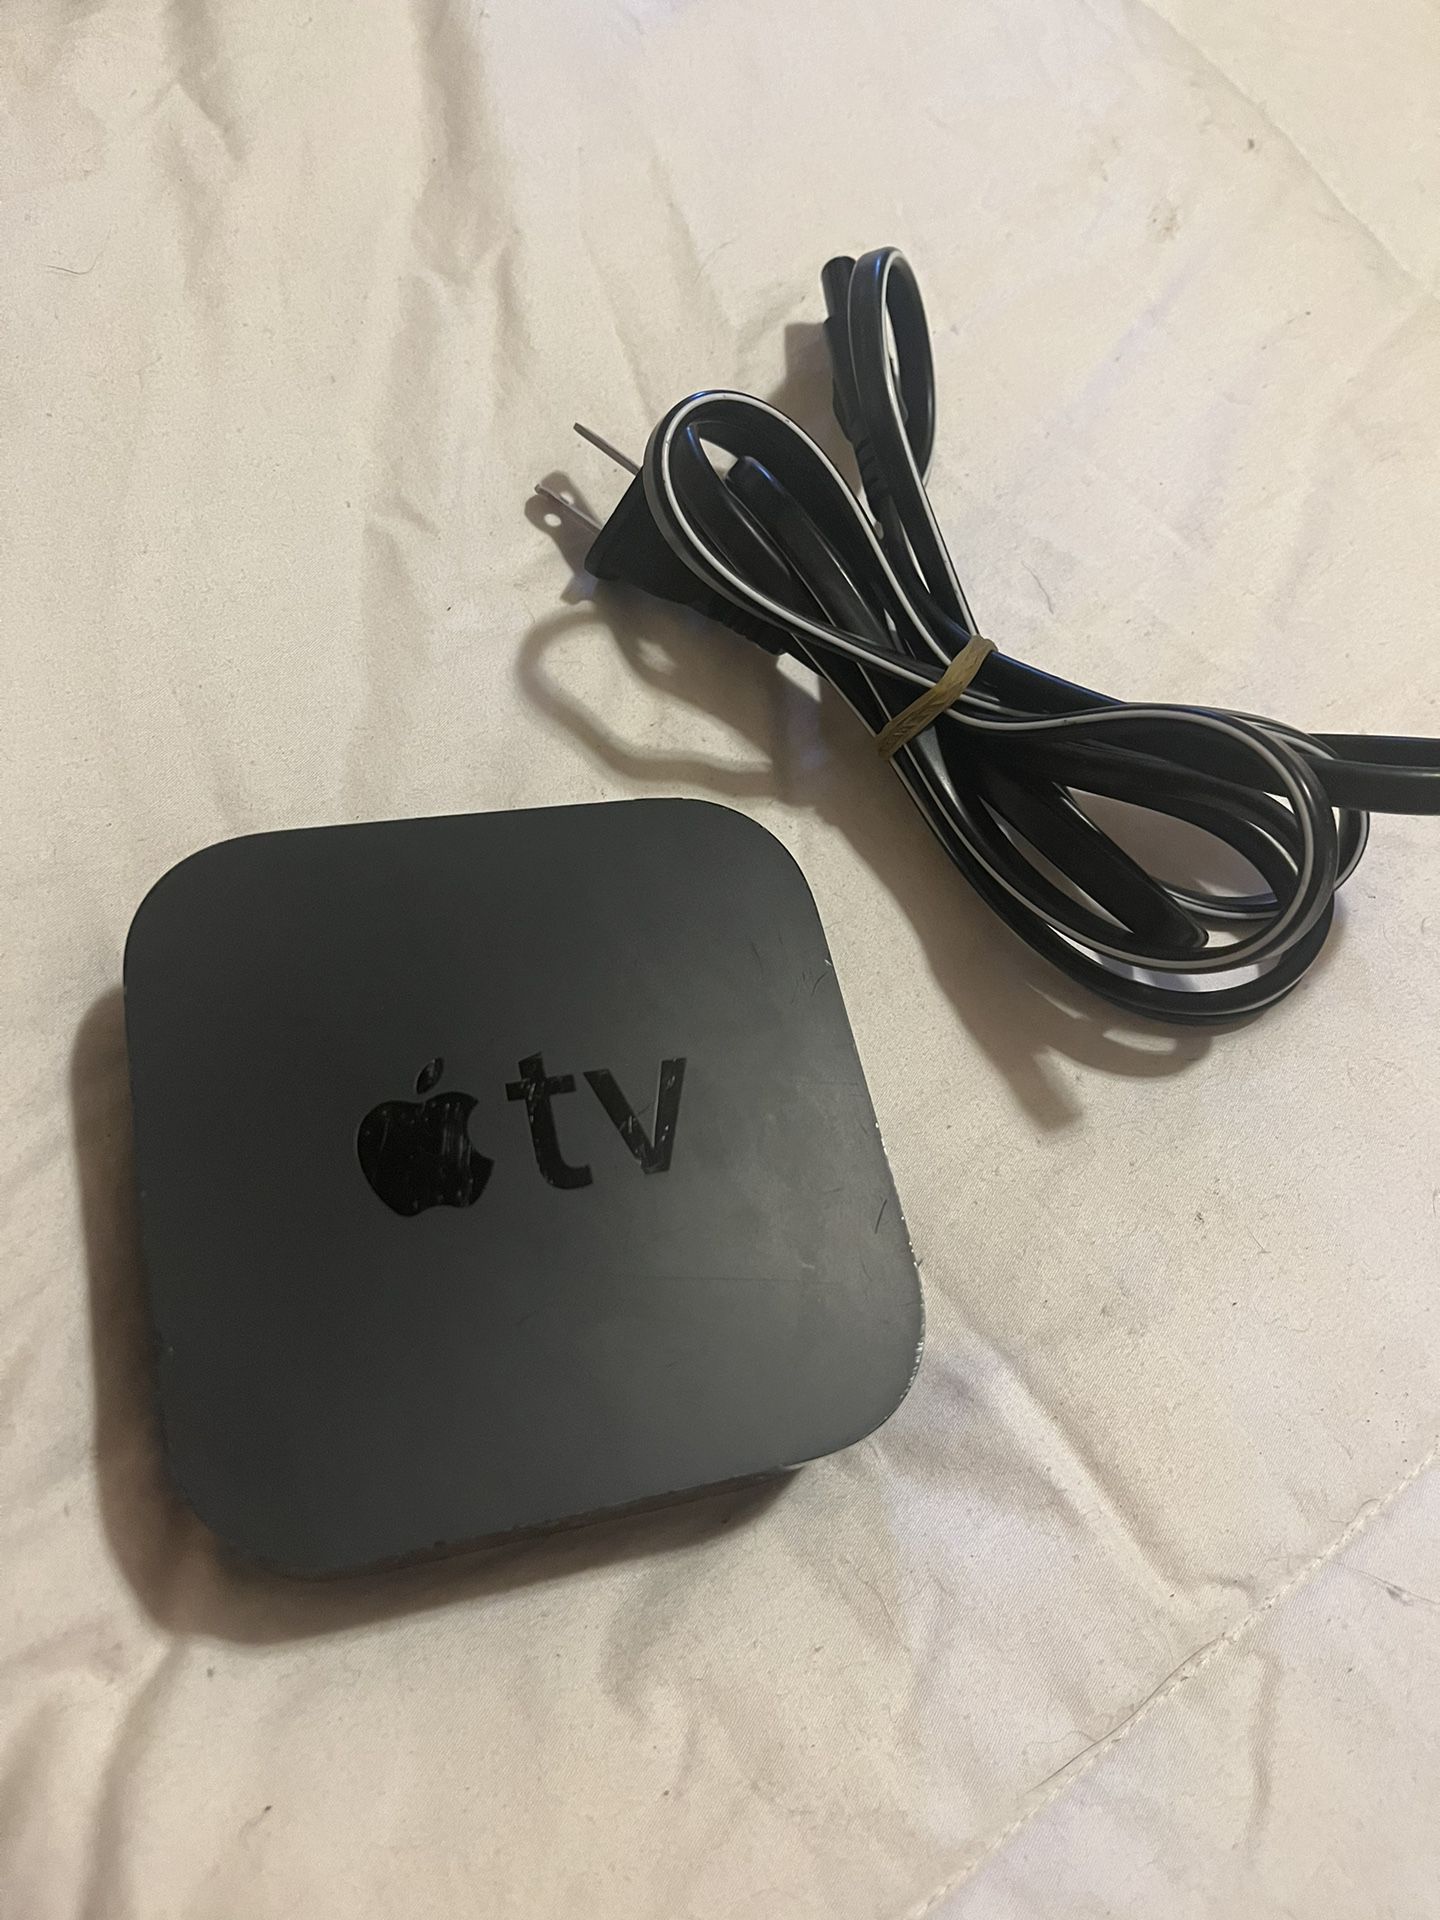 Apple TV (No Remote)